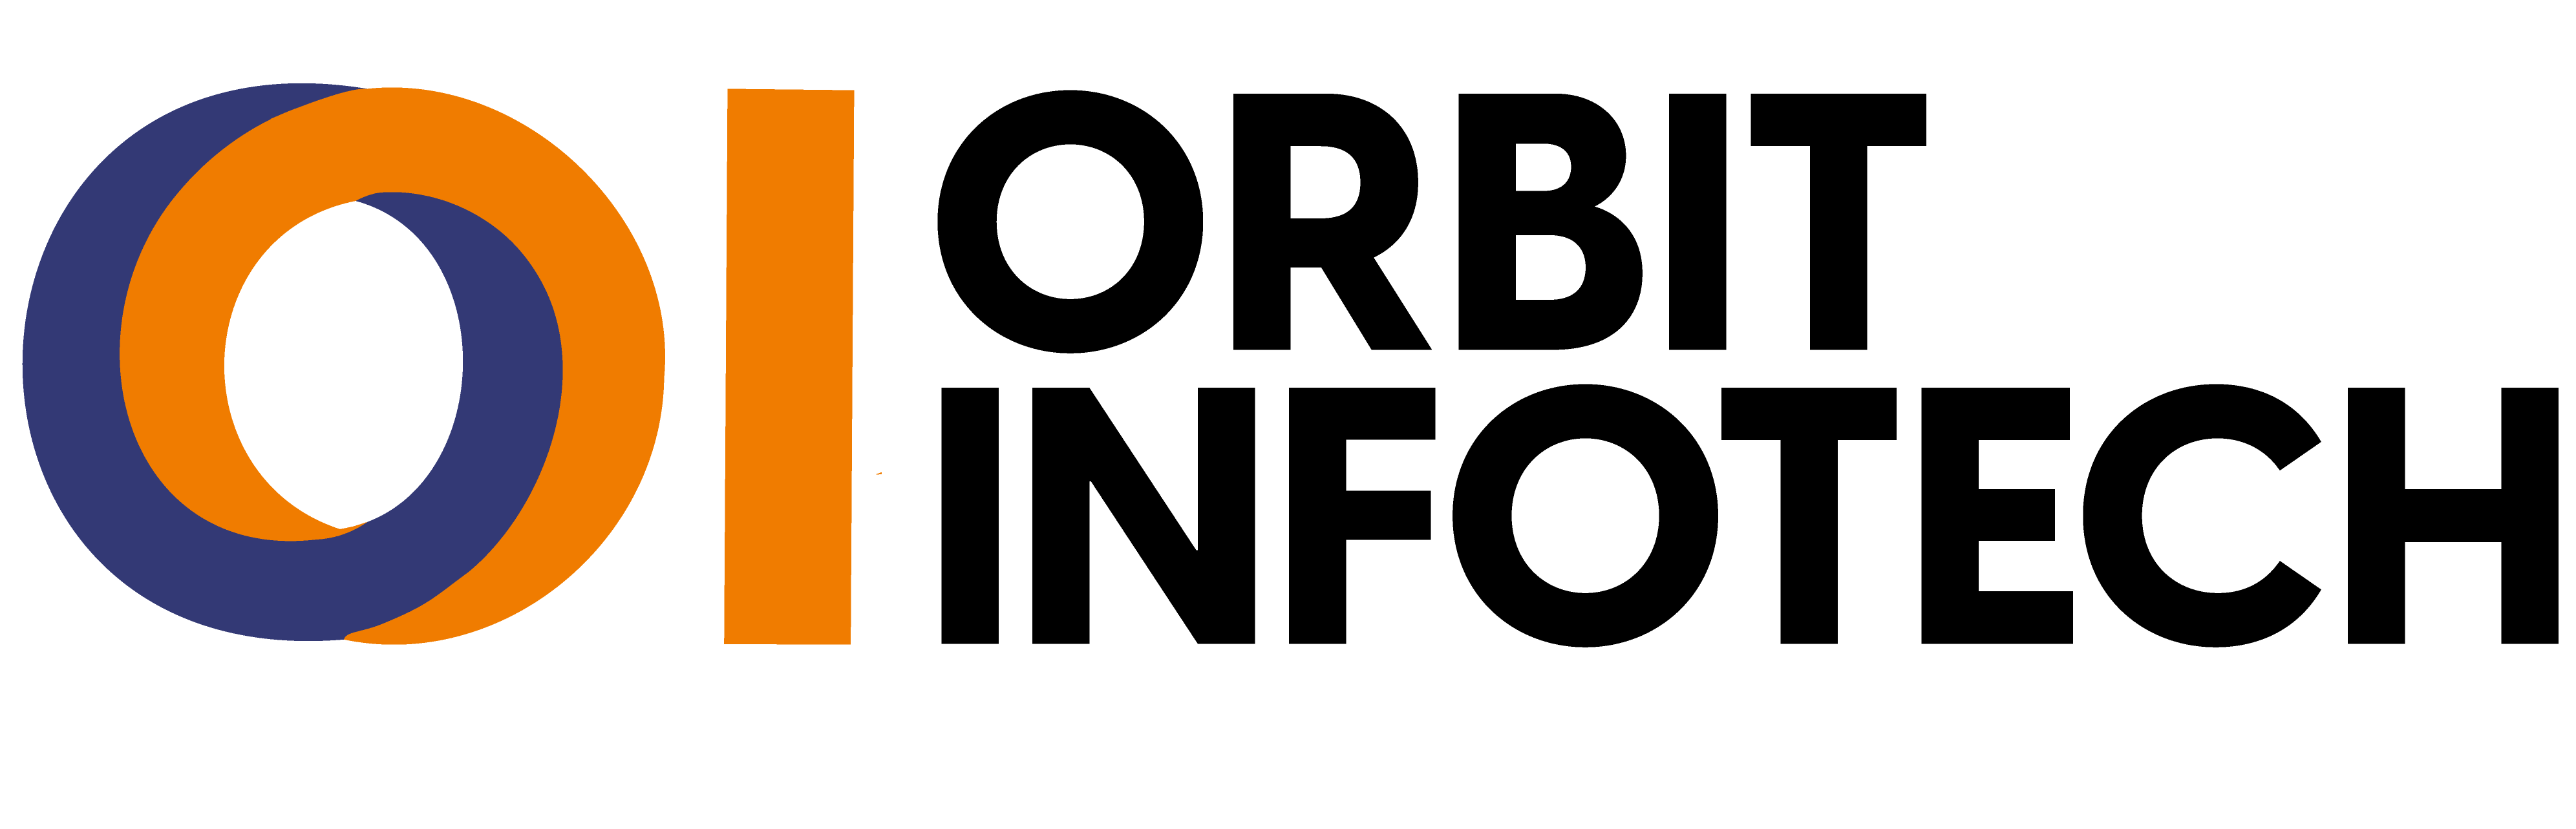 orbit infotech